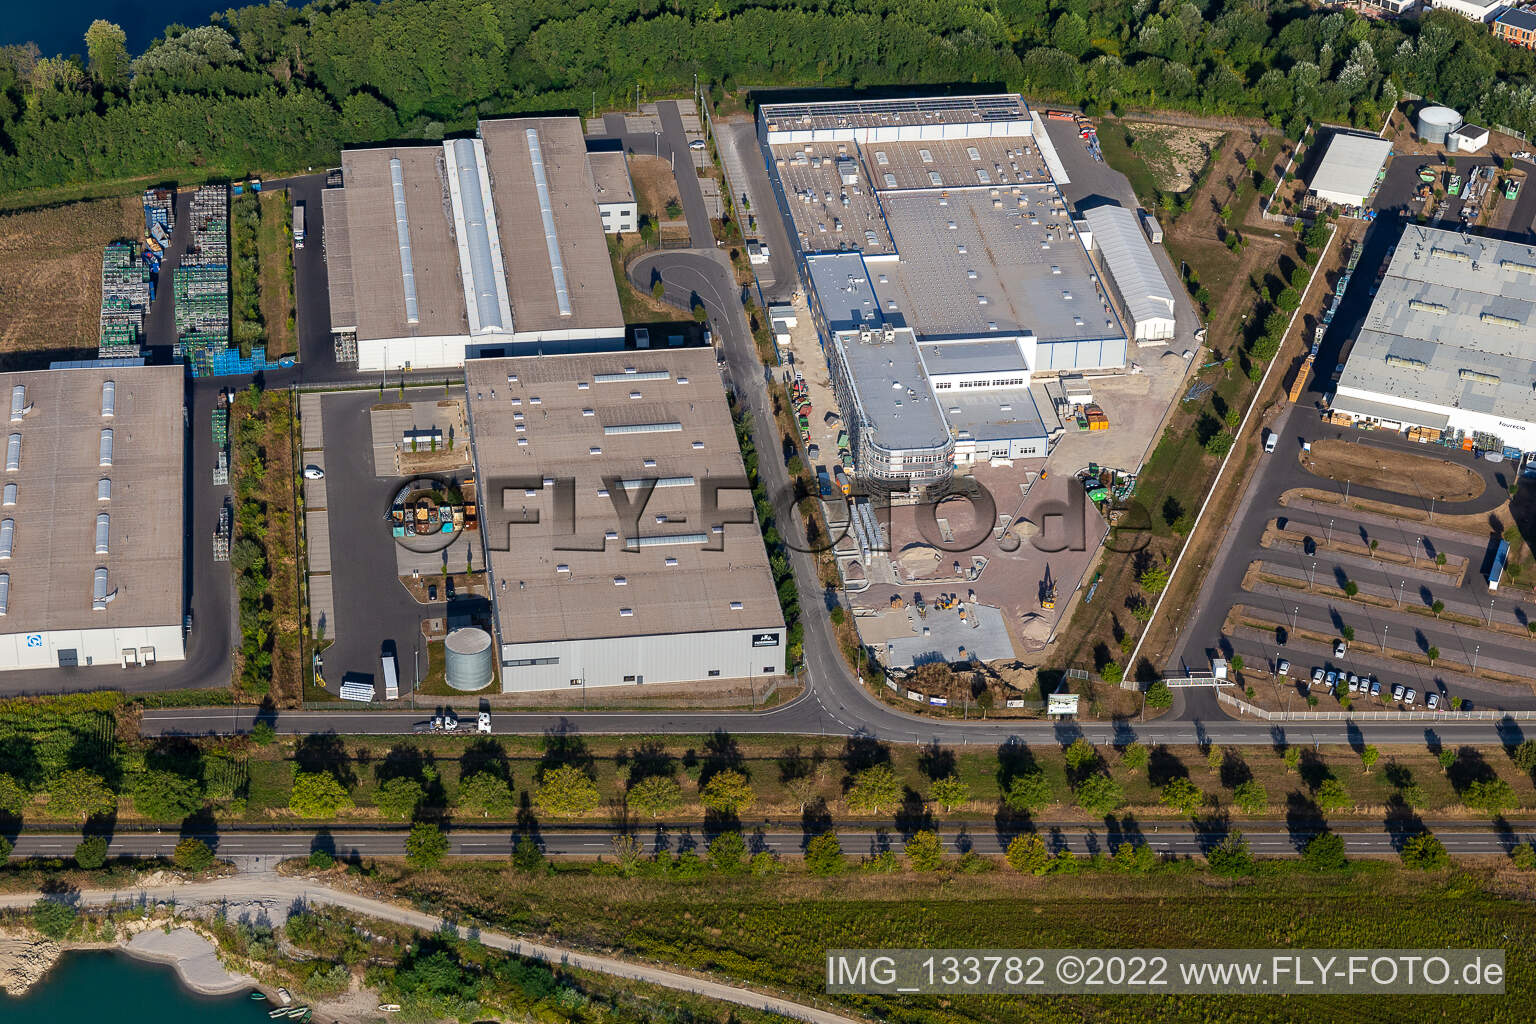 Vue aérienne de Groke Doors GmbH, usine Hagenbach à Hagenbach dans le département Rhénanie-Palatinat, Allemagne